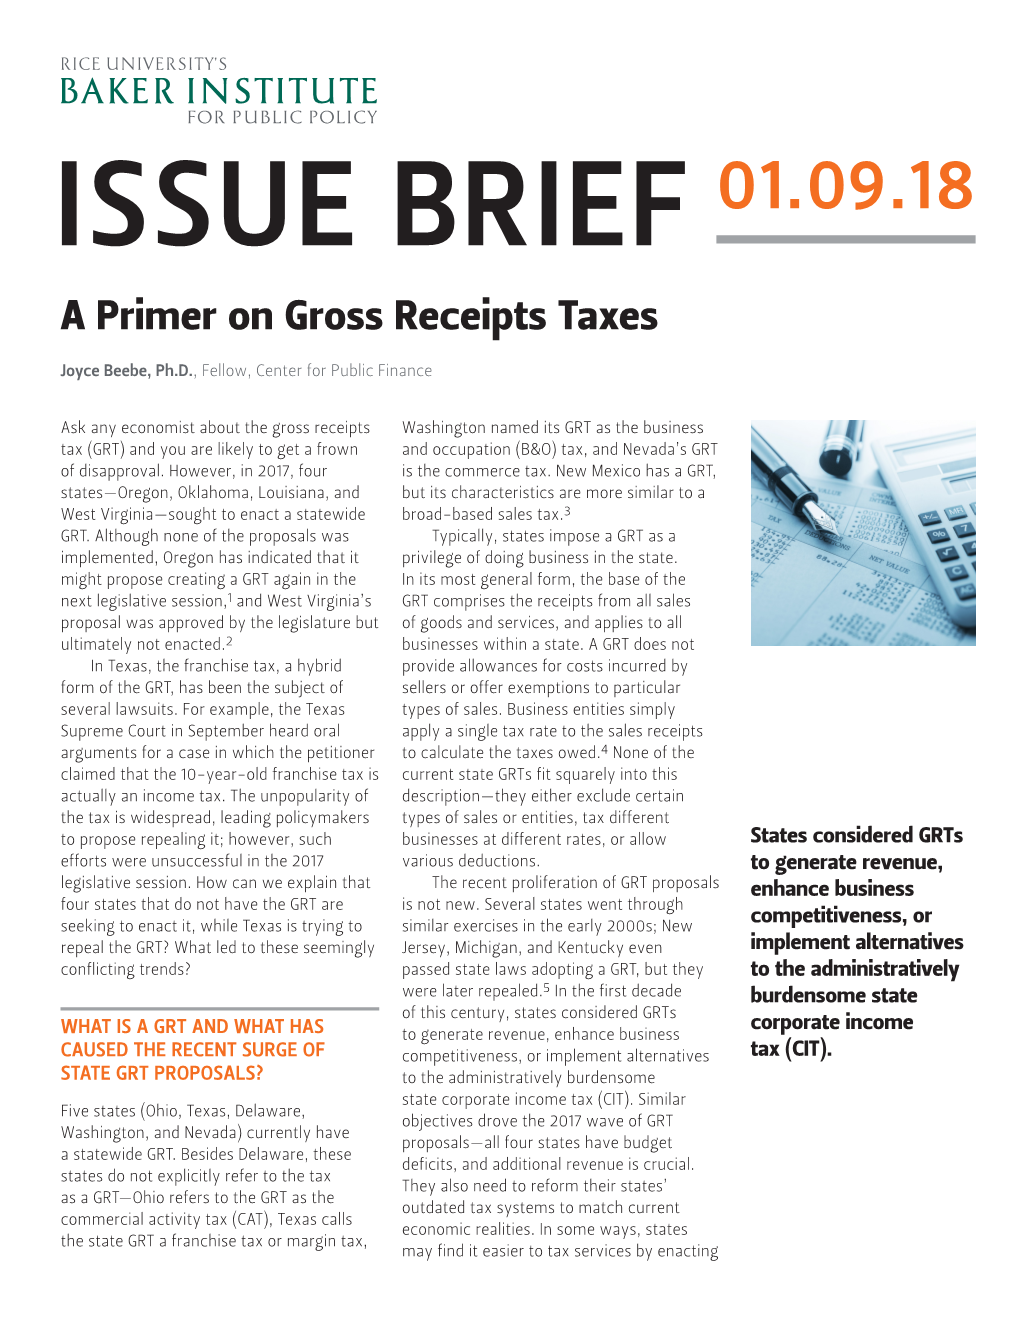 A Primer on Gross Receipts Taxes